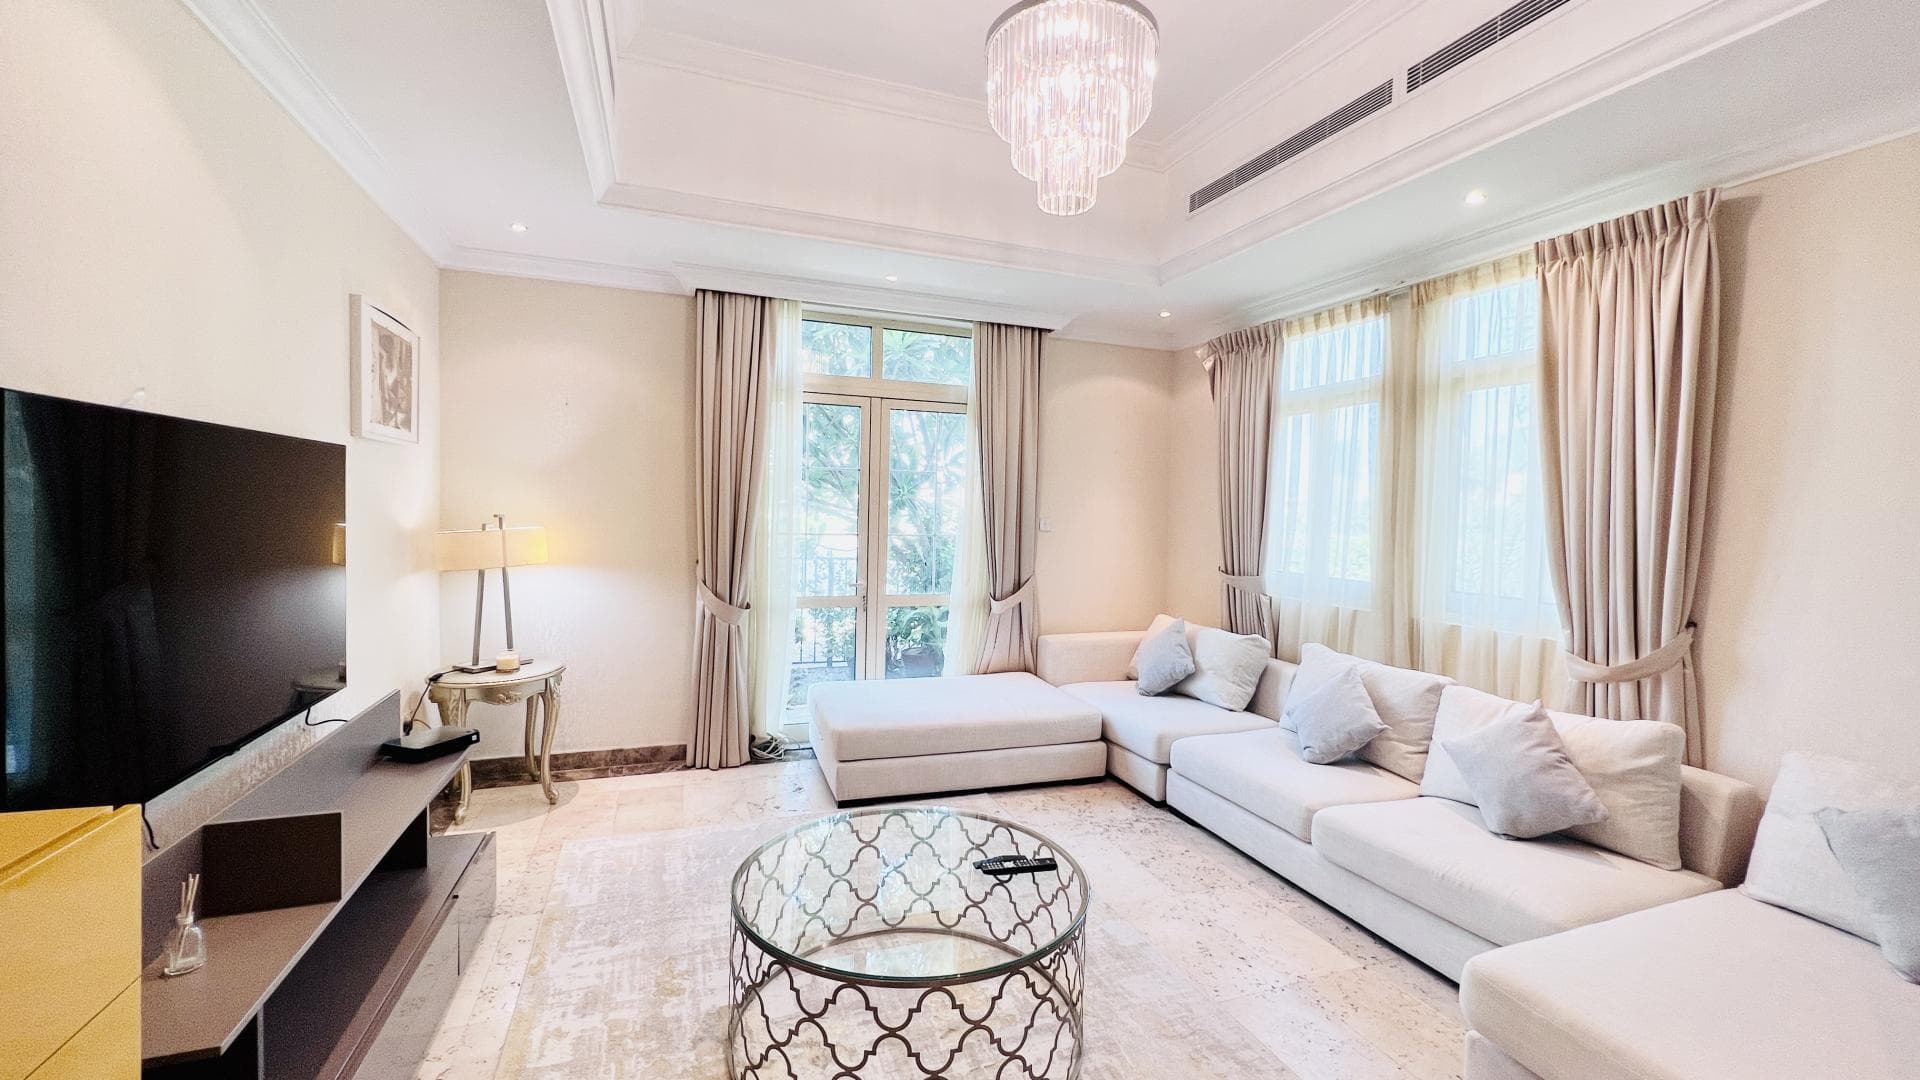 4 Bedroom Villa For Rent Al Thamam 13 Lp34779 Ae73a97716f4a00.jpg